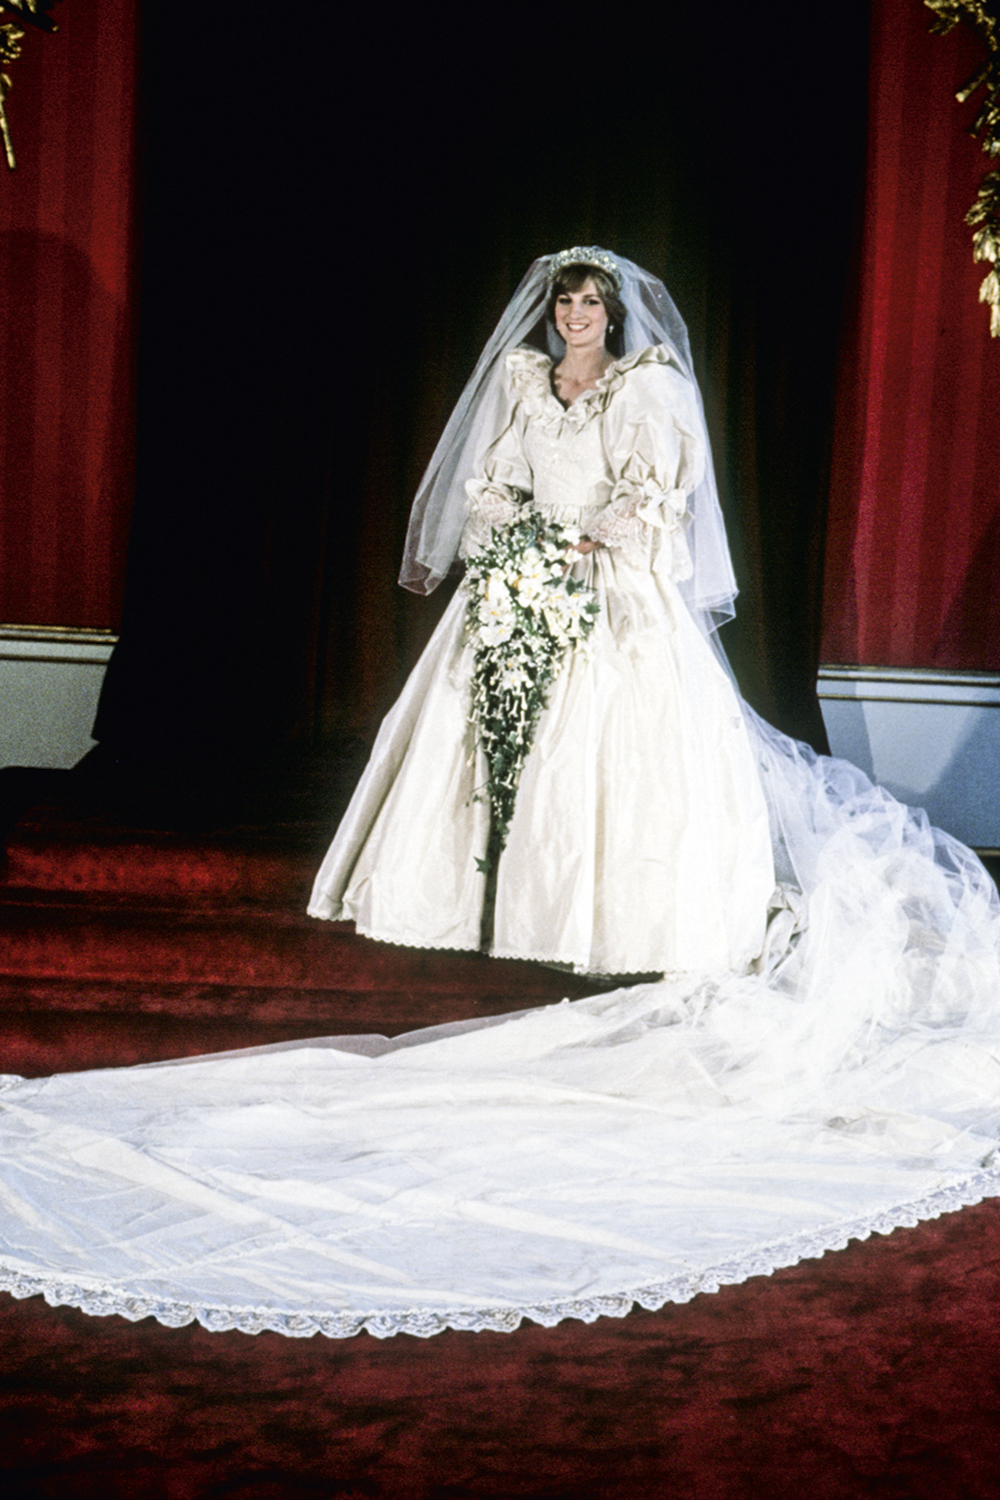 PASSADO - Modelito bolo confeitado: o vestido de casamento da princesa Diana tinha 10 000 pérolas e uma cauda de 7,6 metros. Ele foi imitado por décadas, mas hoje quase ninguém se inspira em tanto volume e detalhes -